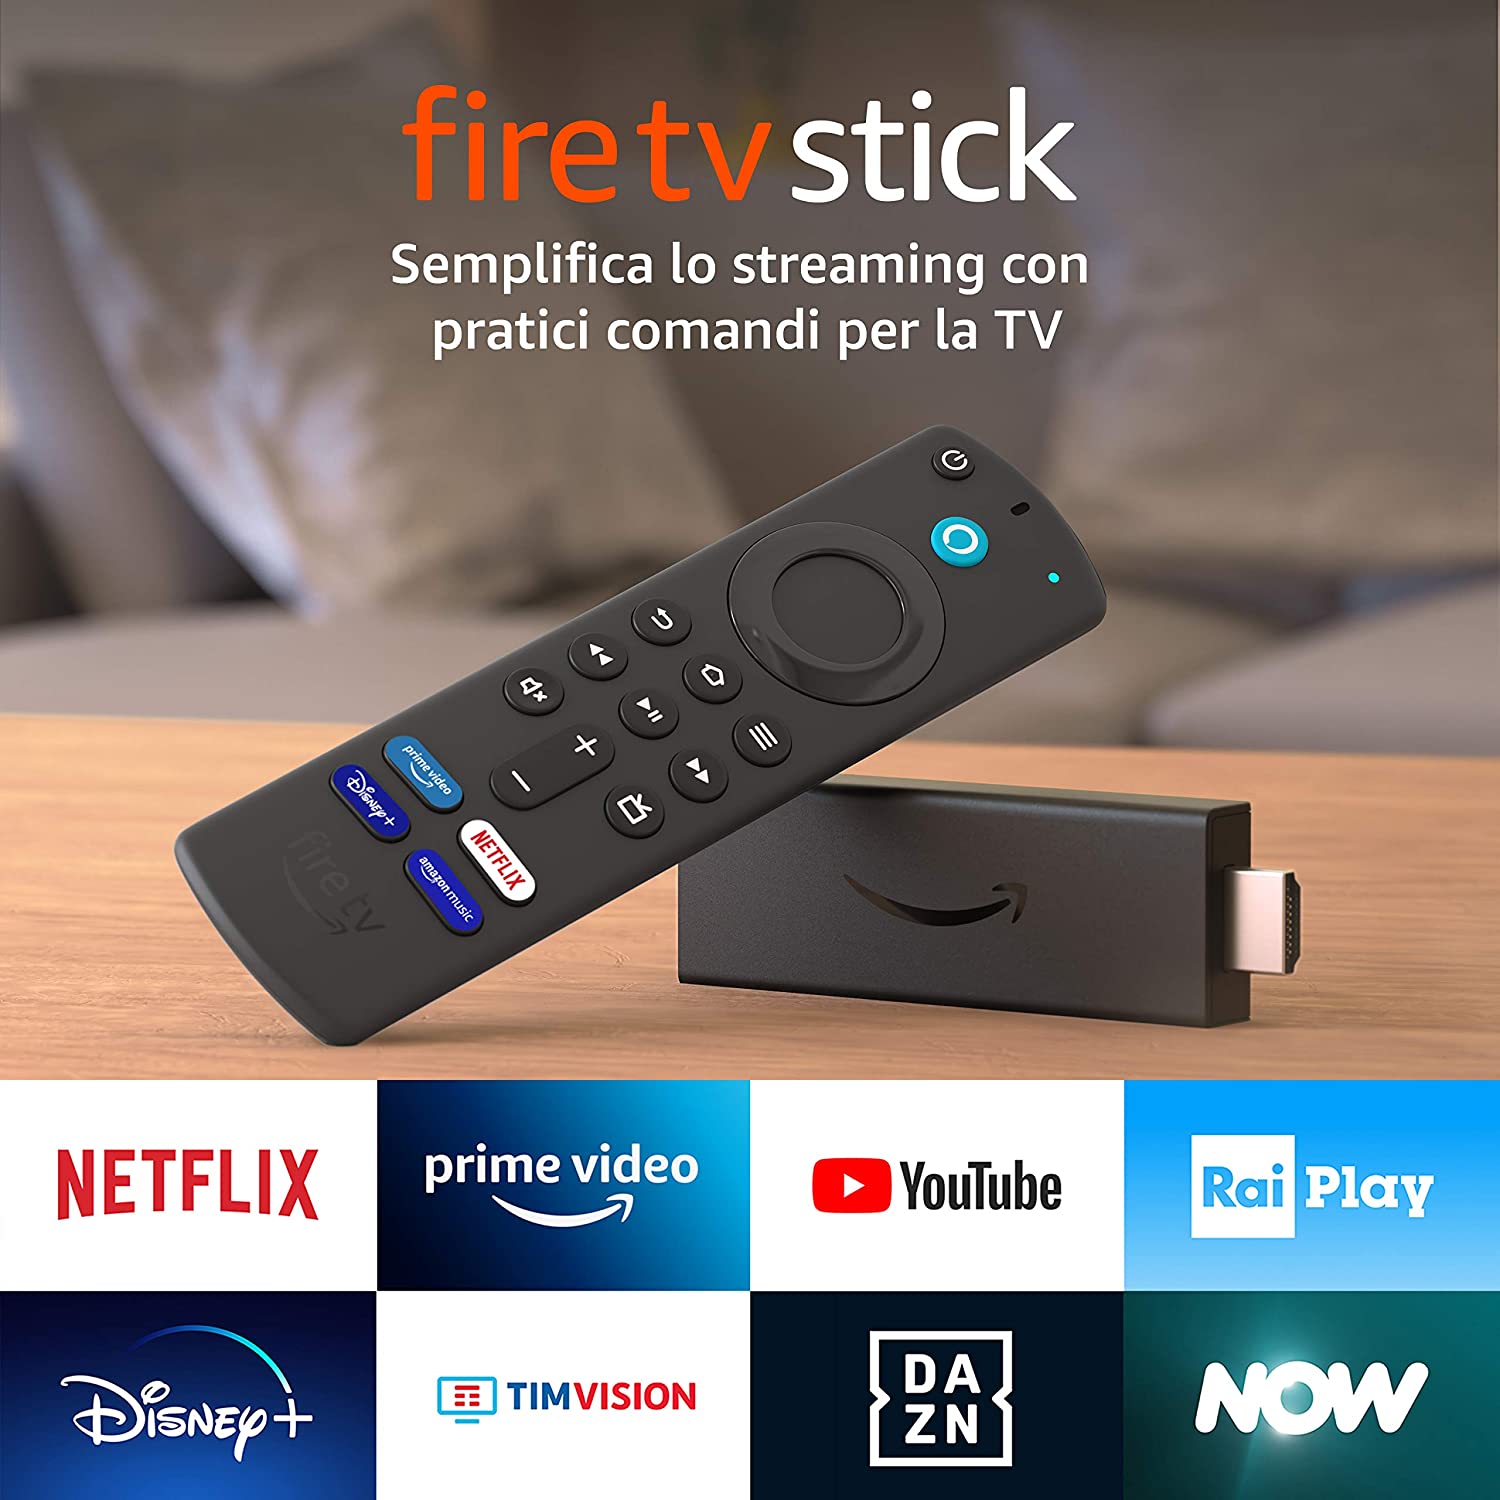 Raiplay App Fire TV Stick : Fire TV Stick con telecomando vocale Alexa ...